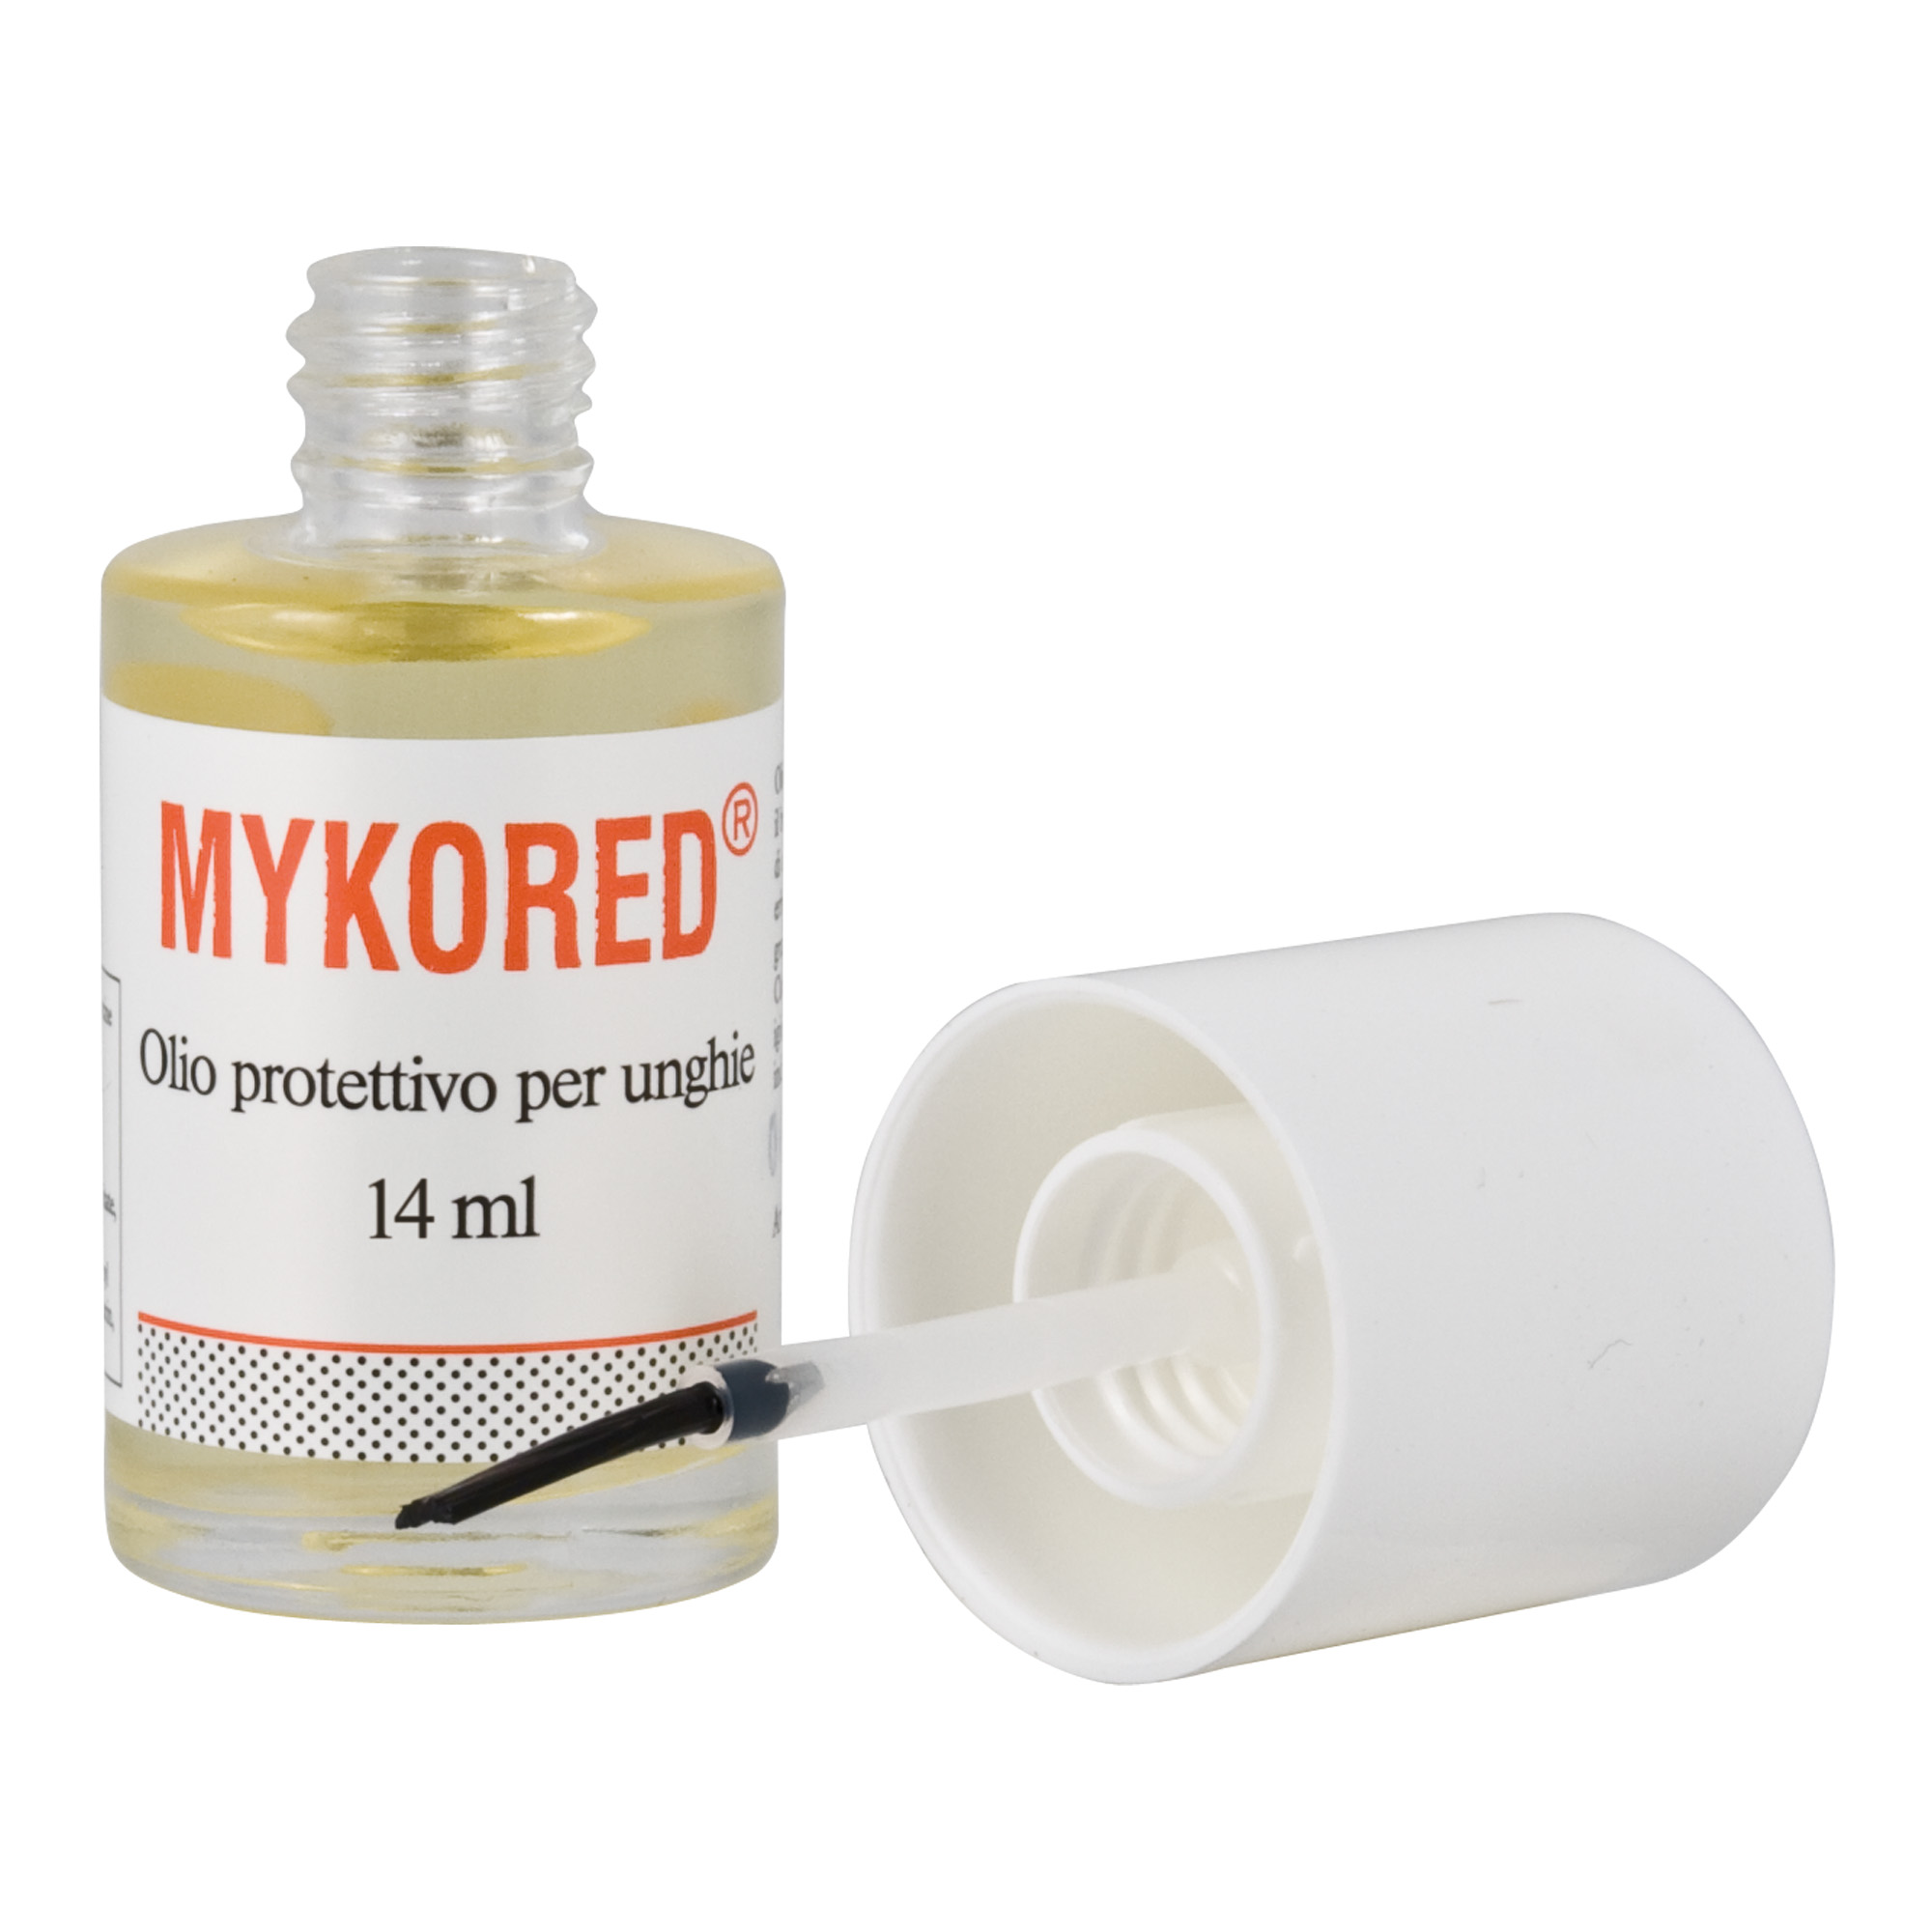 Olio protettivo igienizzante per unghie Mykored 14 ml